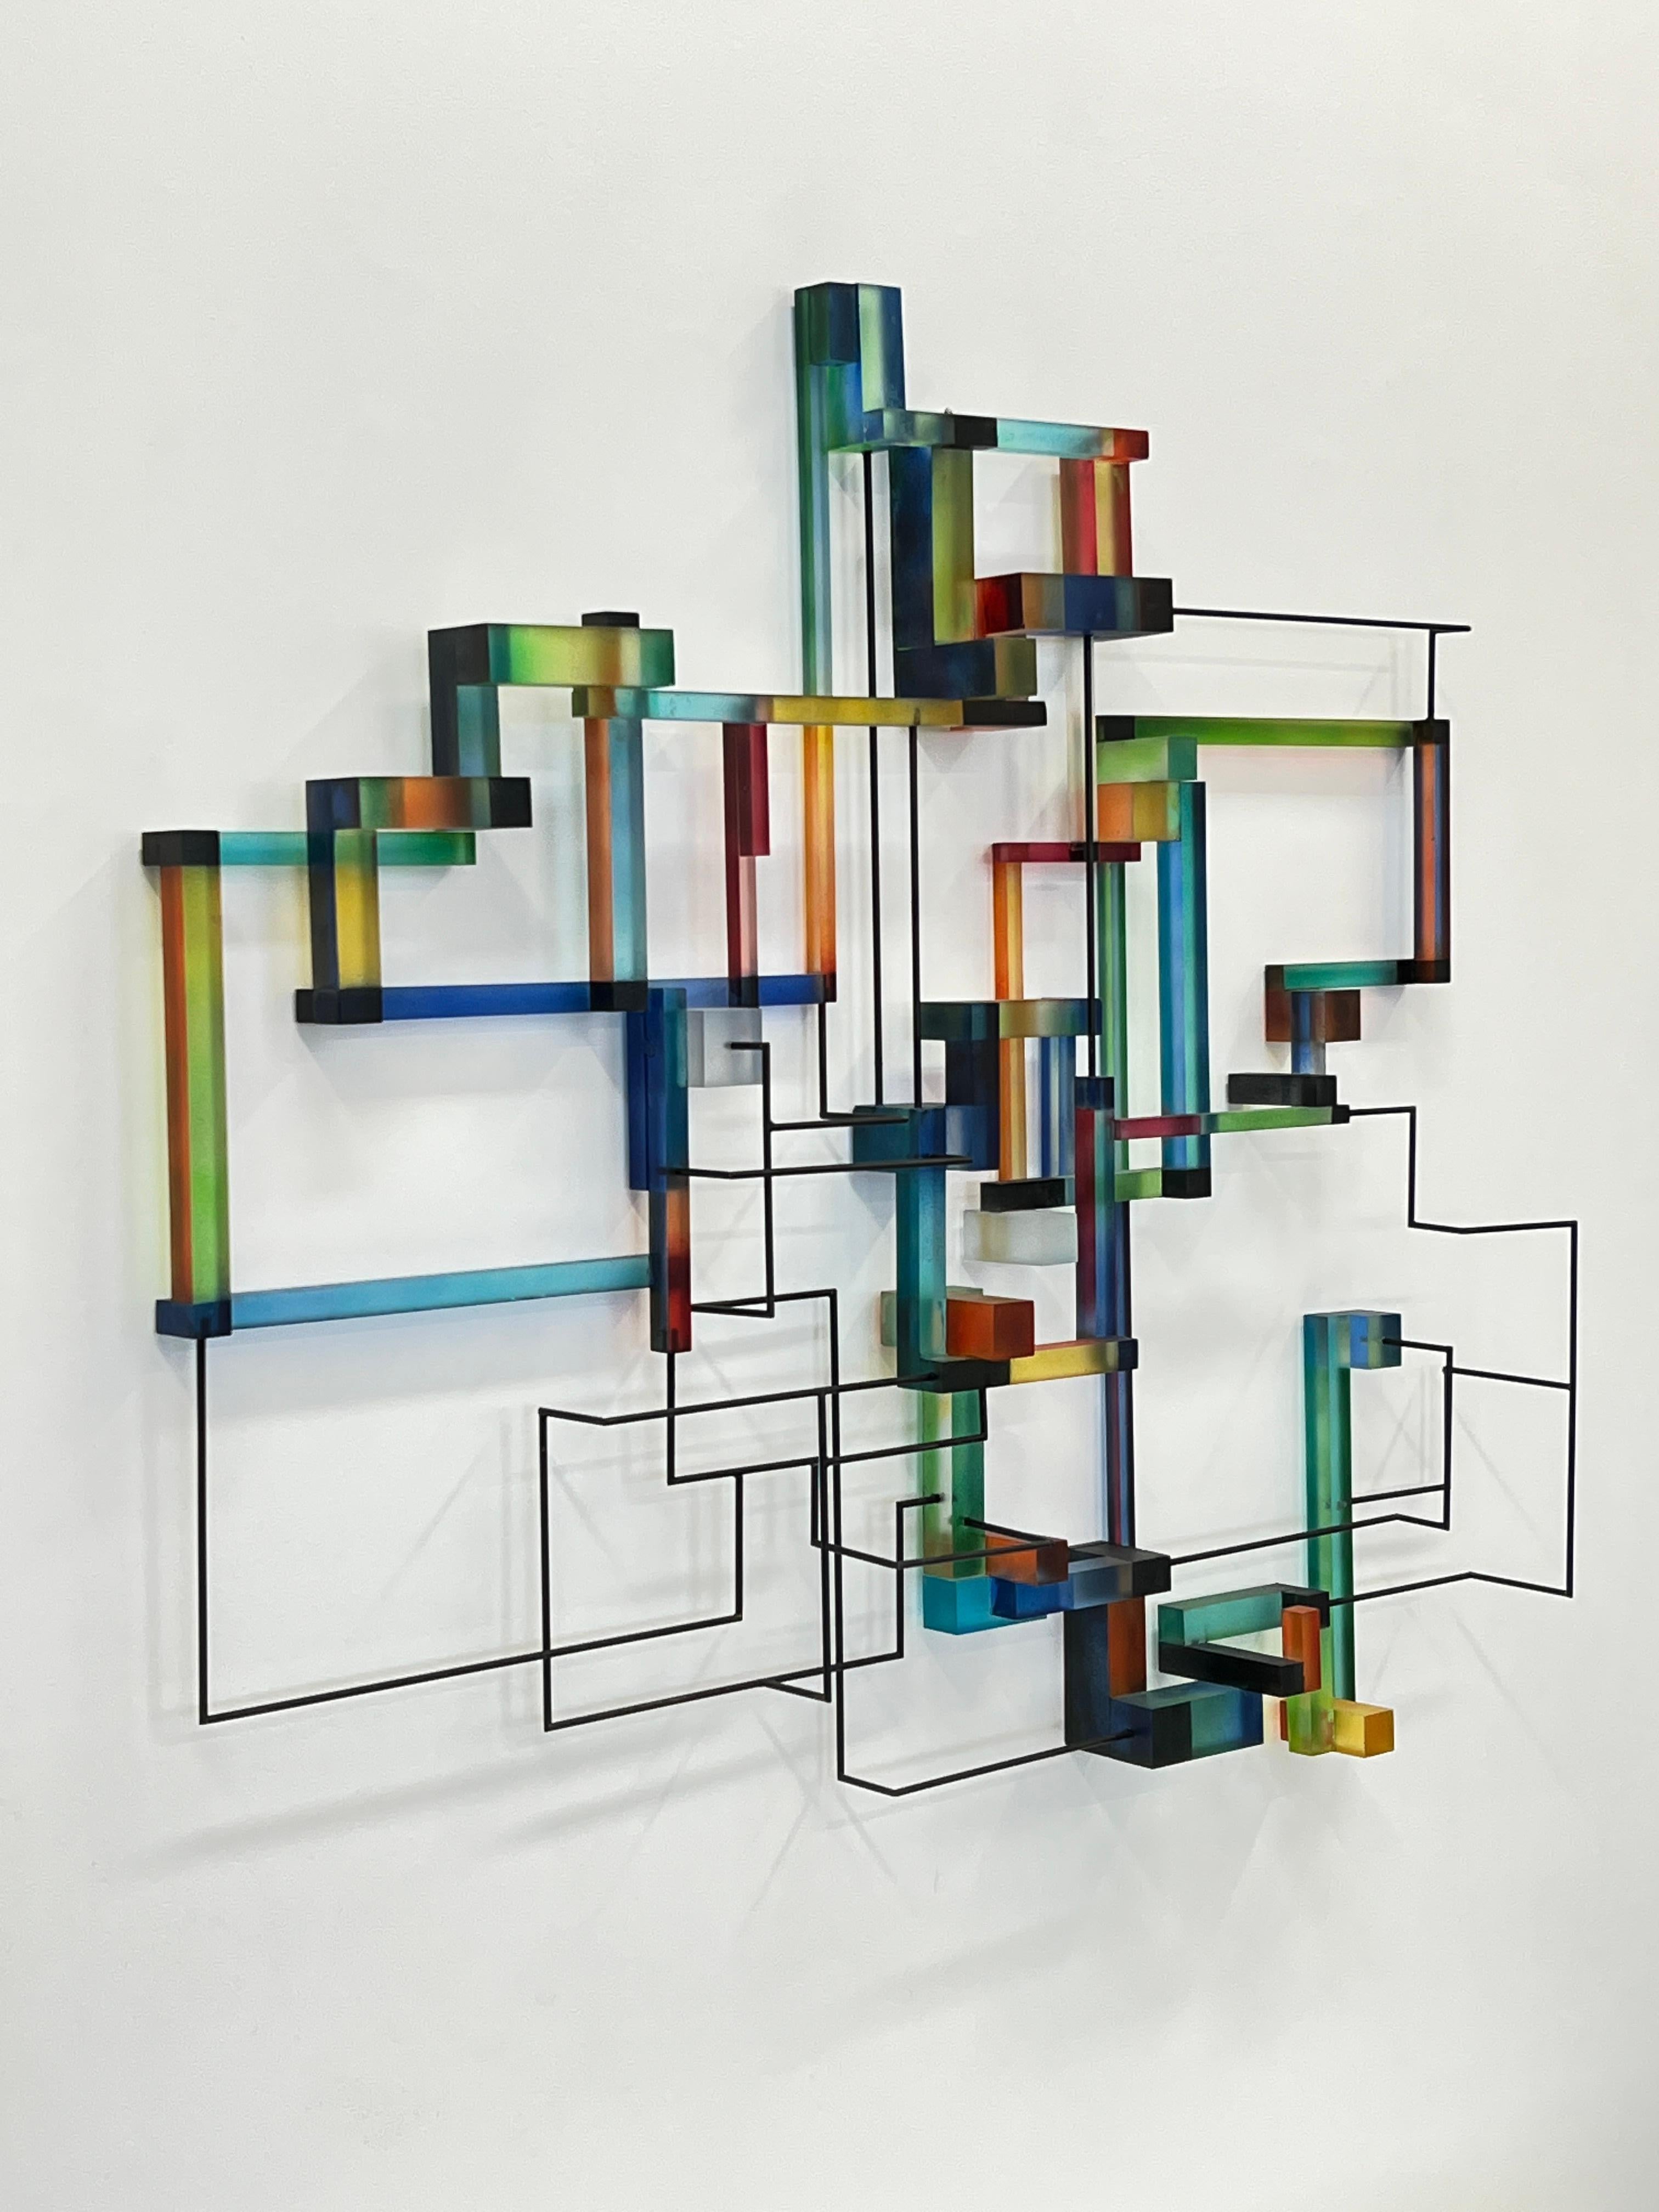 Prozor : contemporary modern abstract geometric sculpture - Sculpture by Greg Chann